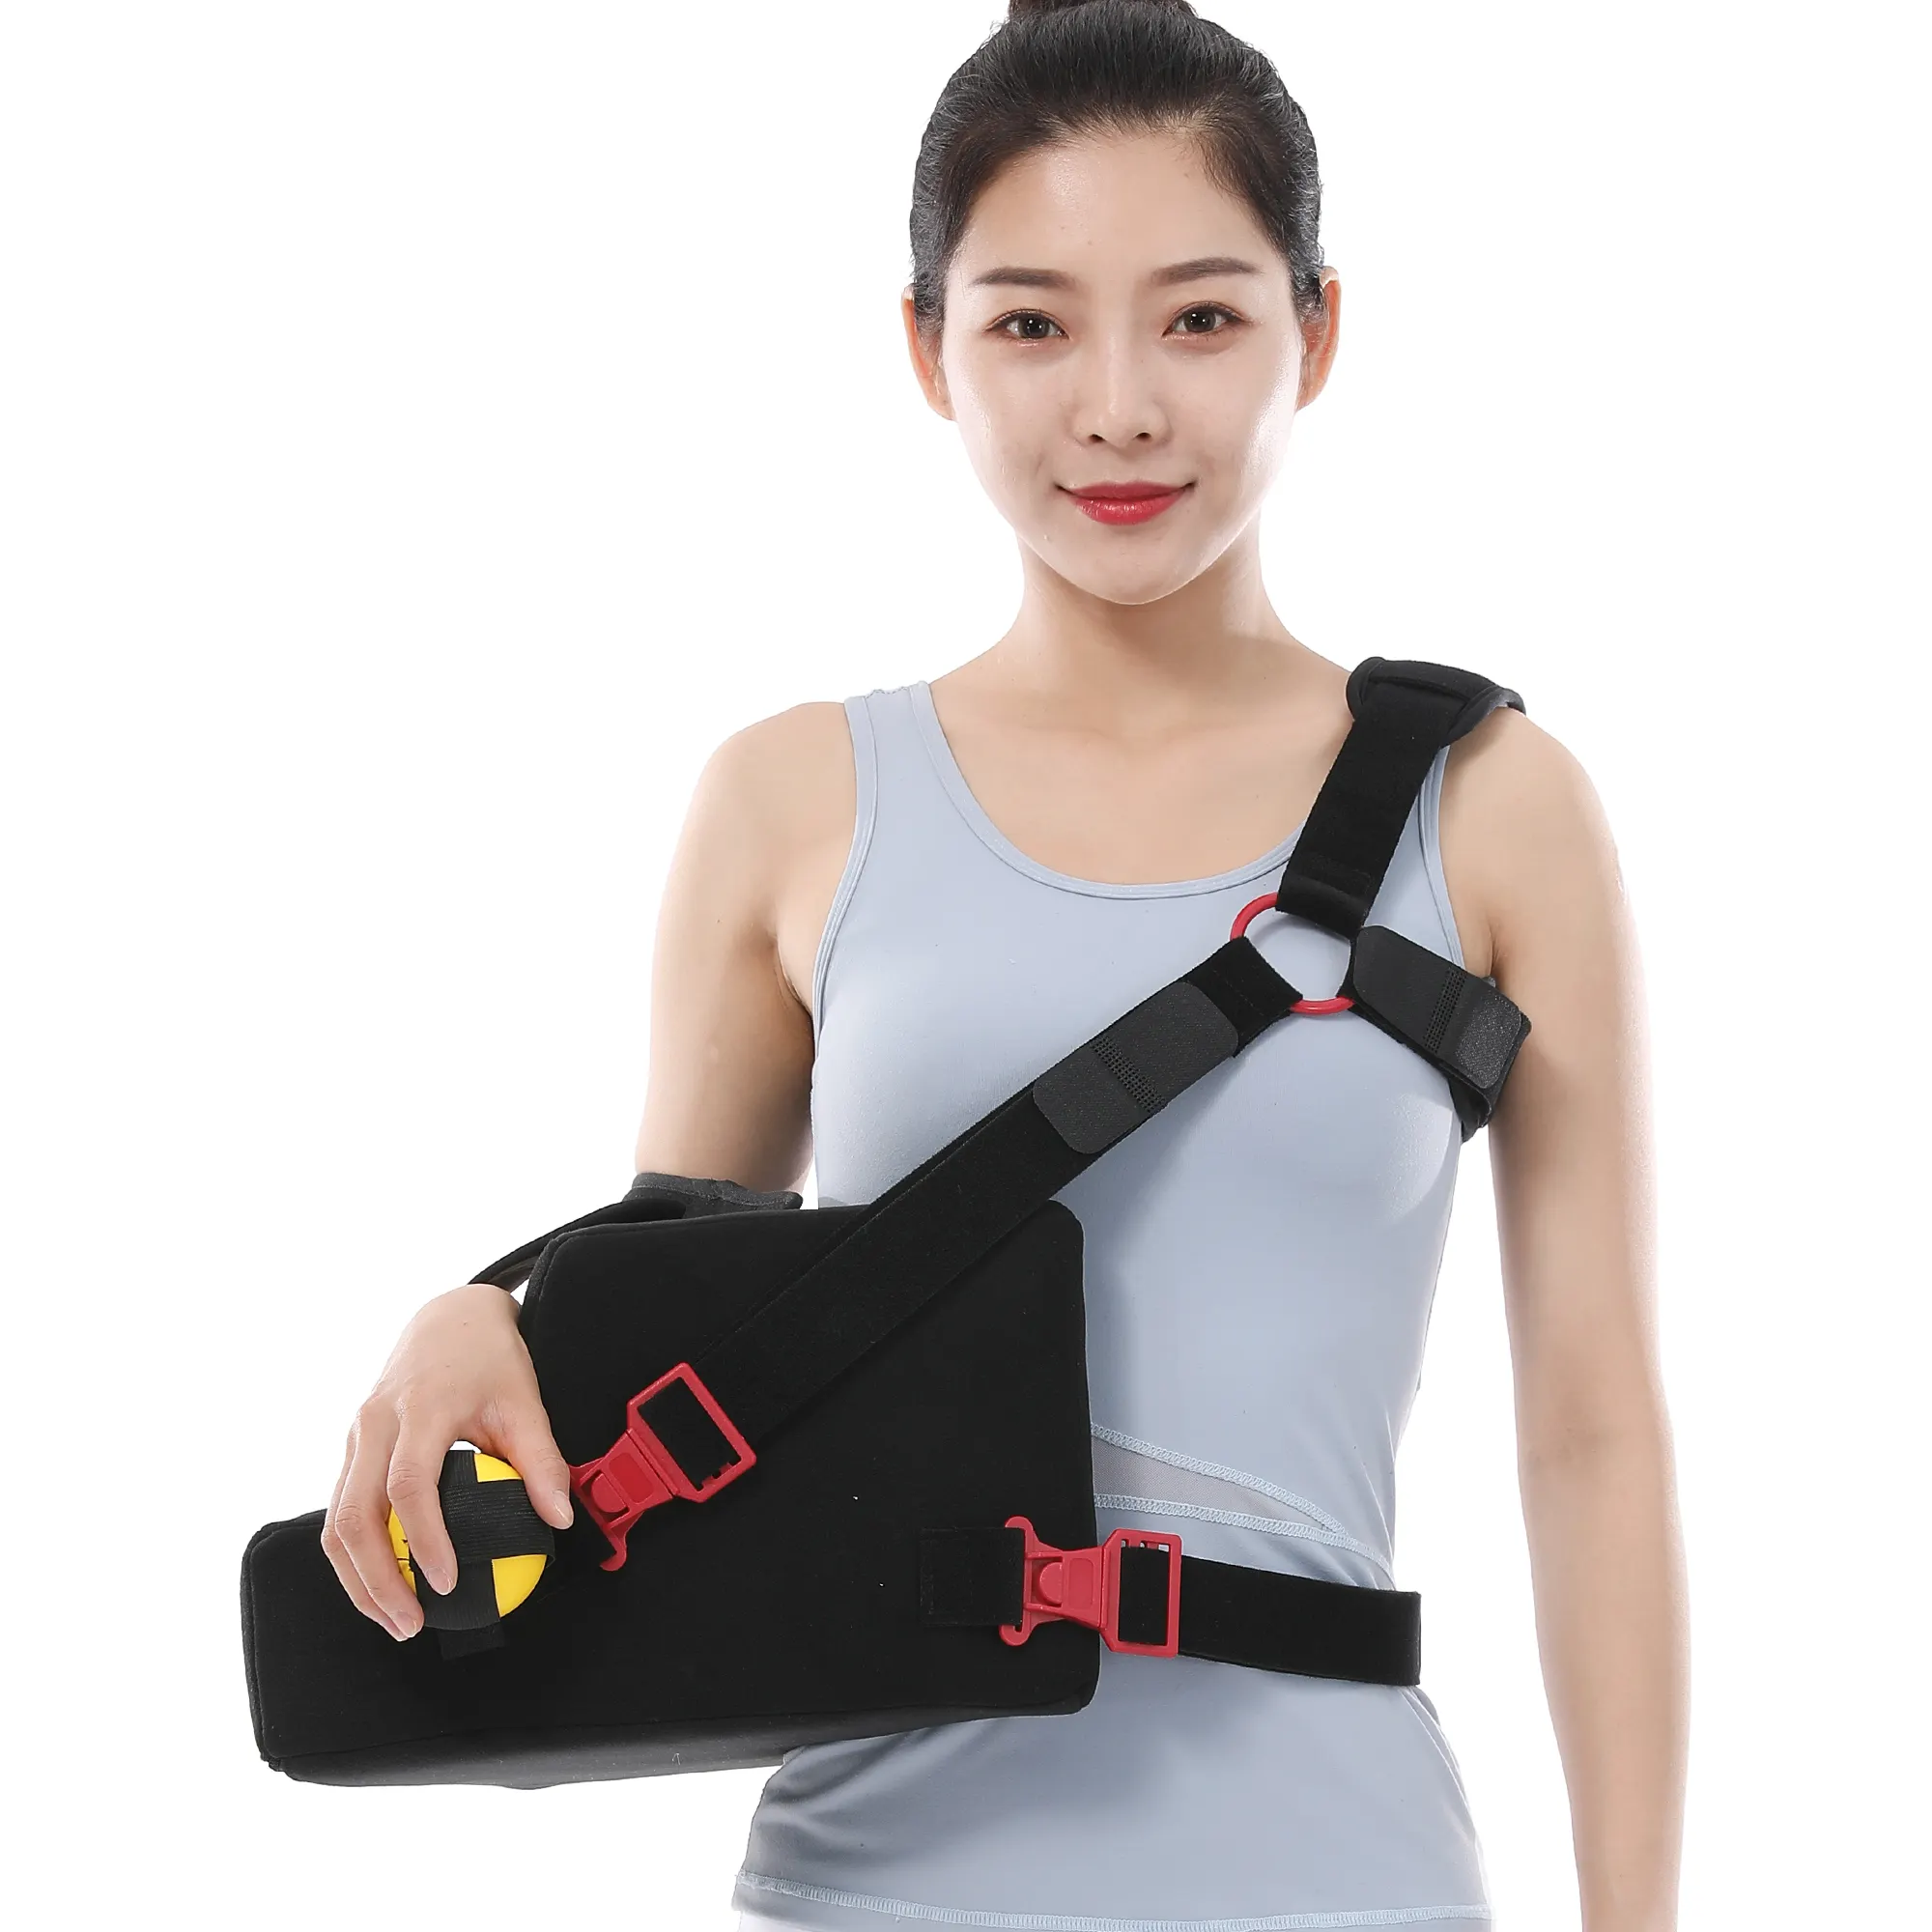 Supporto fisso del cuscino di abduzione della spalla per la lesione della cuffia dei rotatori supporto postoperatorio di riabilitazione per la dislocazione della spalla